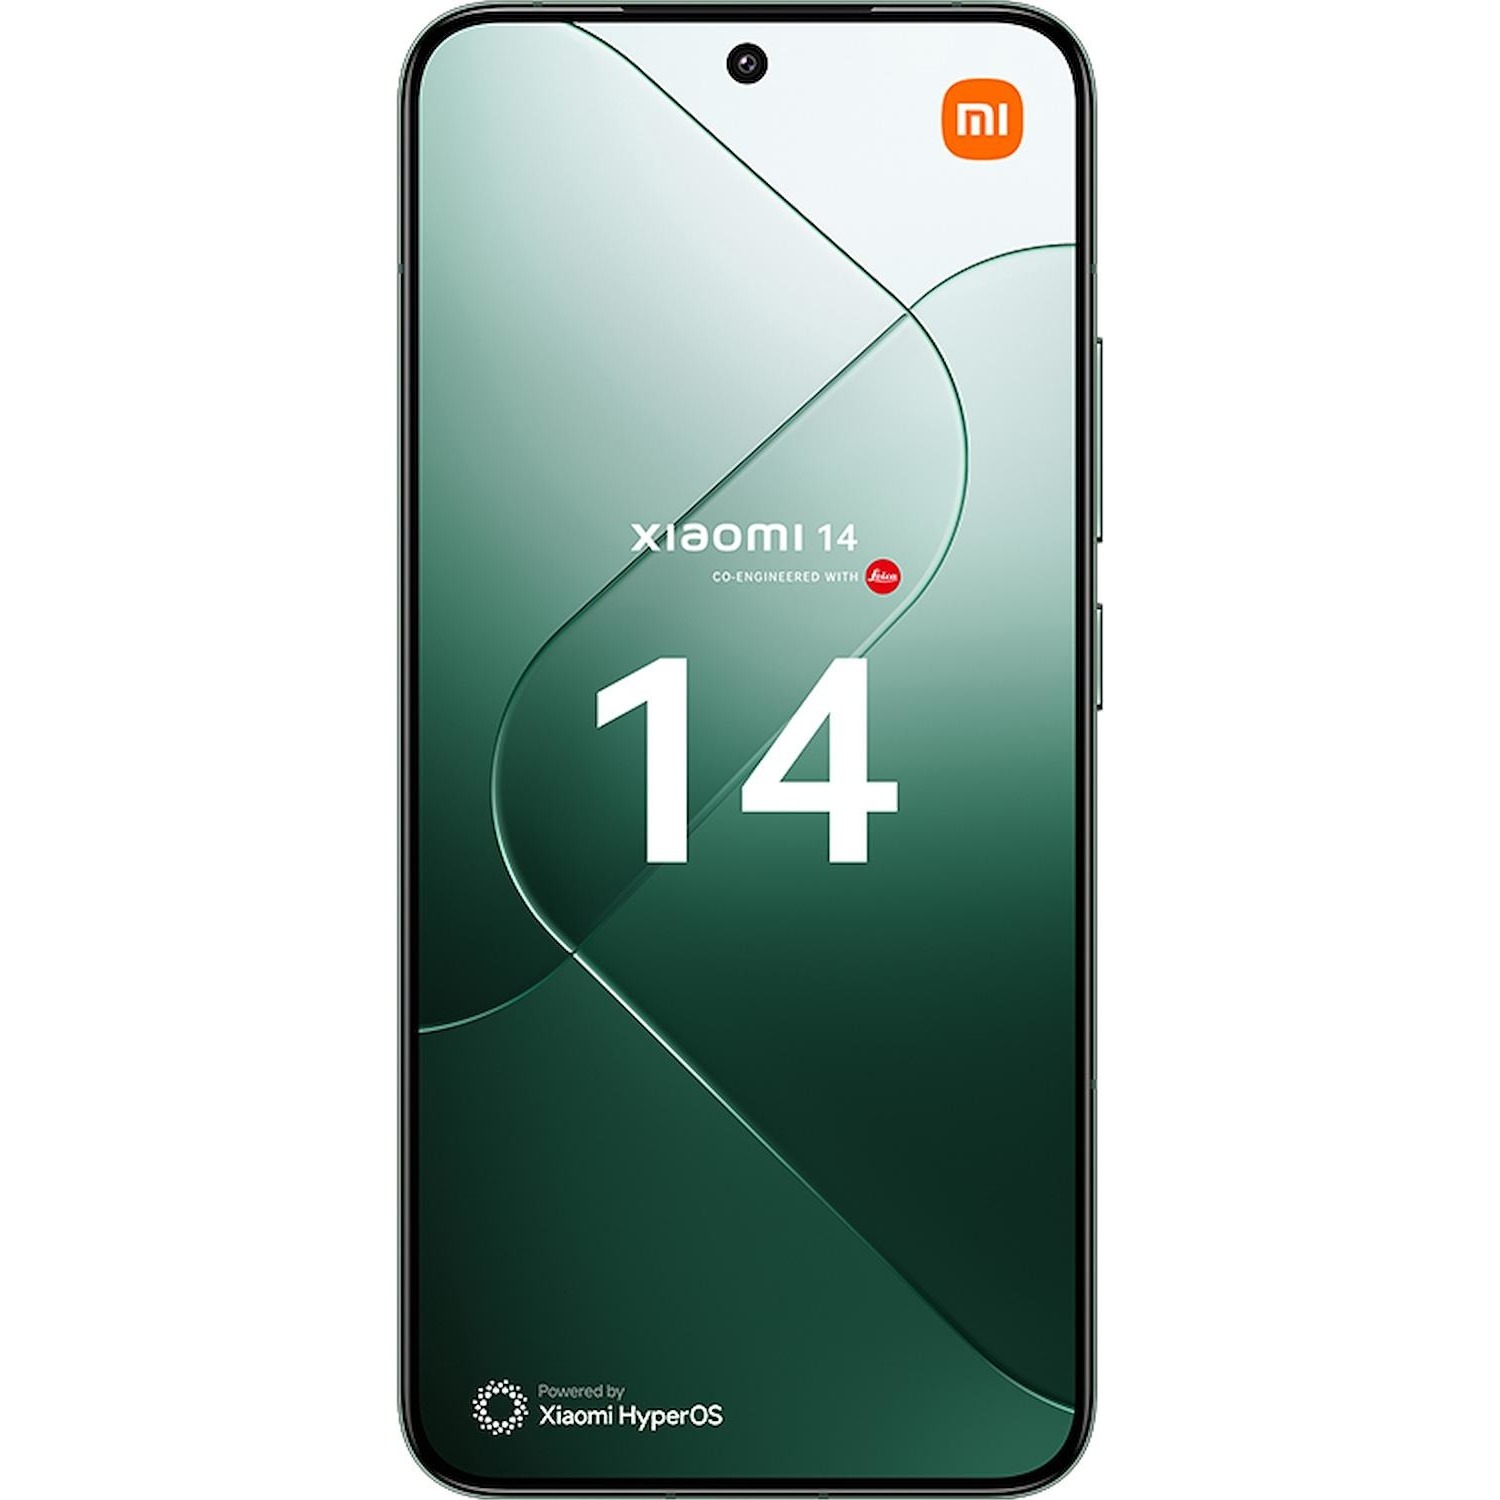 Immagine per Smartphone Xiaomi 14 12/512GB jade green verde da DIMOStore